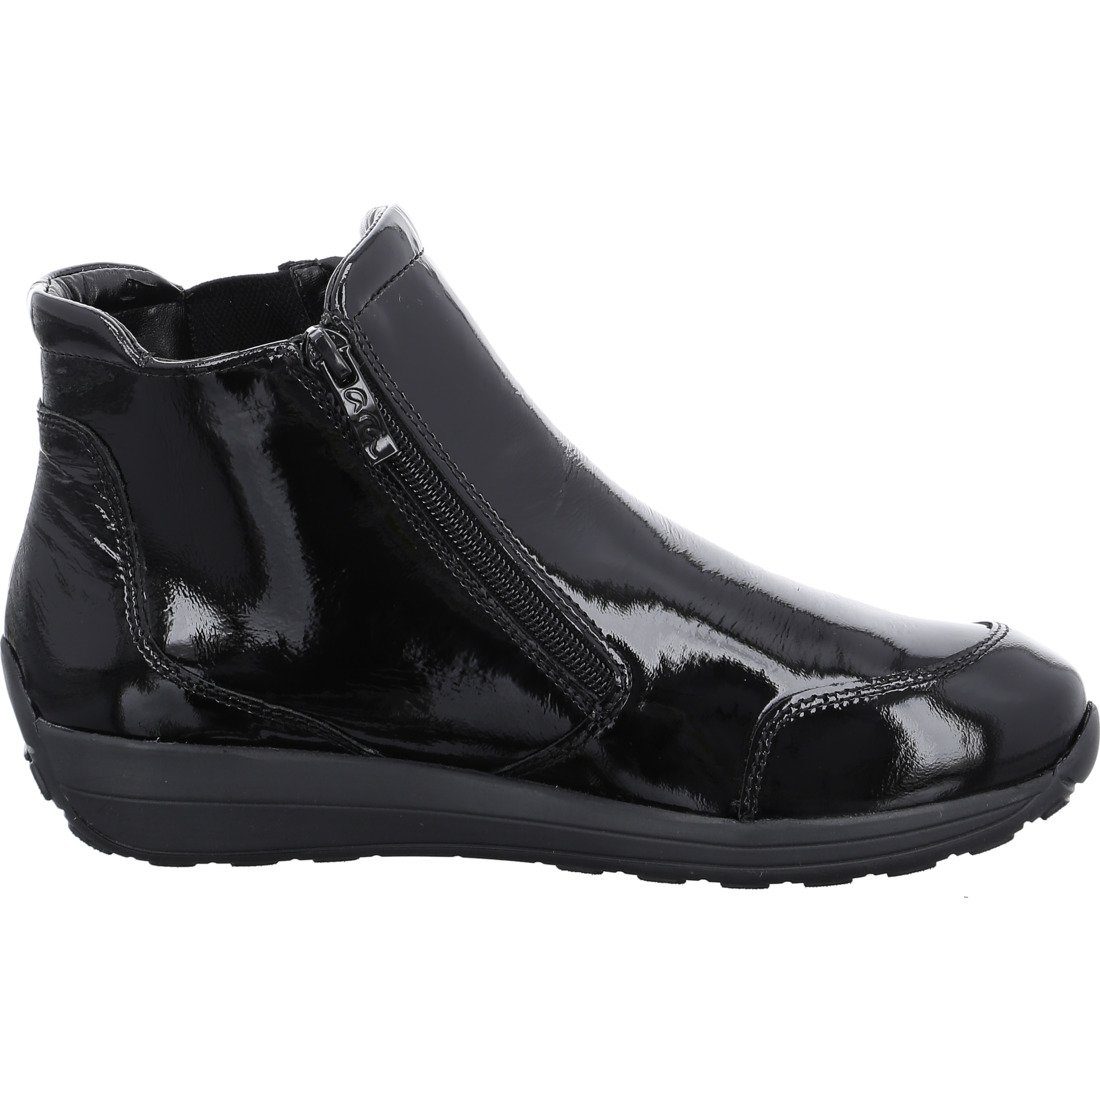 Ara Stiefelette 043836 Merano Schuhe, schwarz - Stiefelette Lackleder Ara